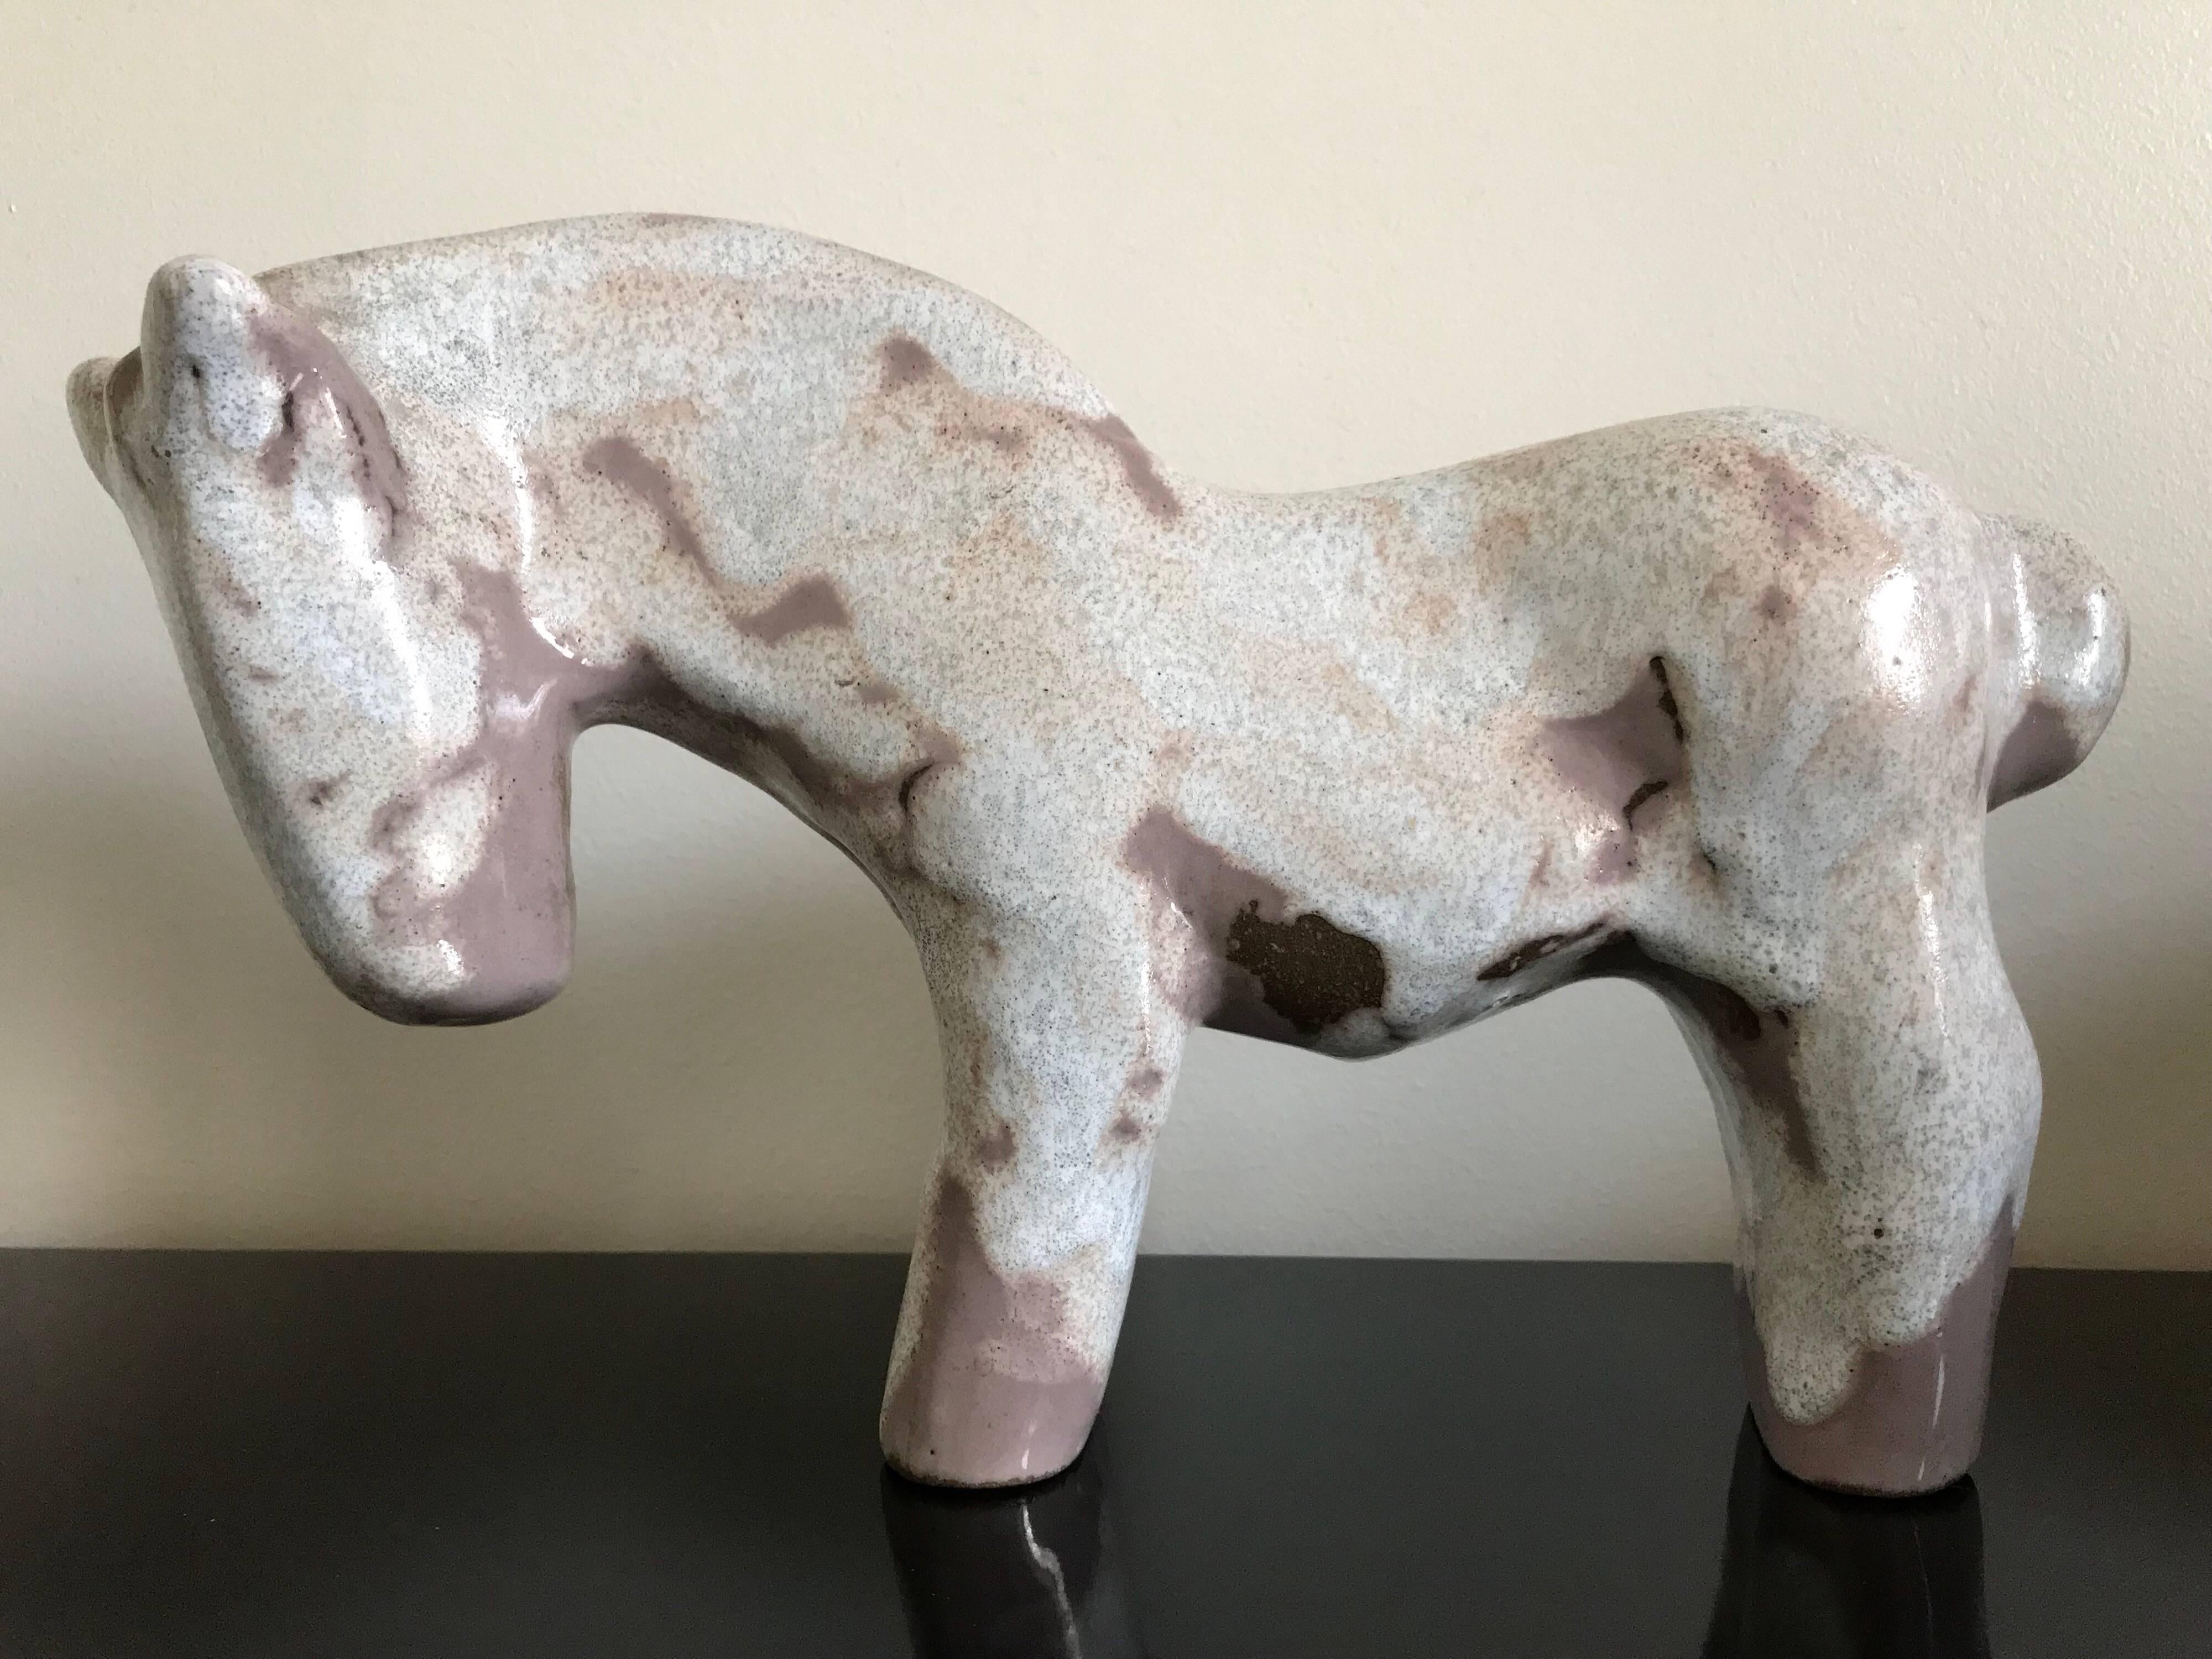 Ceramic horse sculpture by Marianna von Allesch.